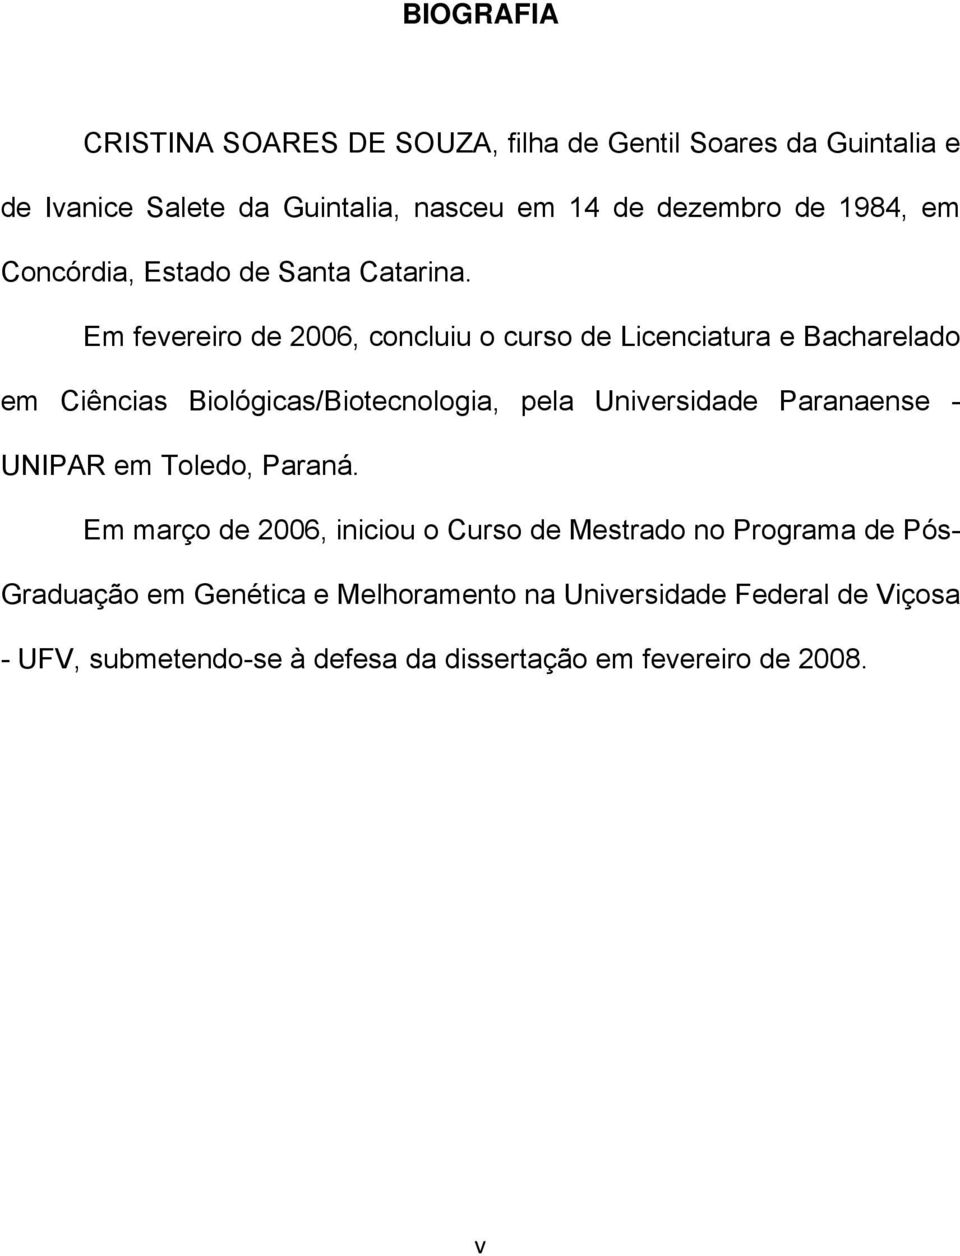 Em fevereiro de 2006, concluiu o curso de Licenciatura e Bacharelado em Ciências Biológicas/Biotecnologia, pela Universidade Paranaense -